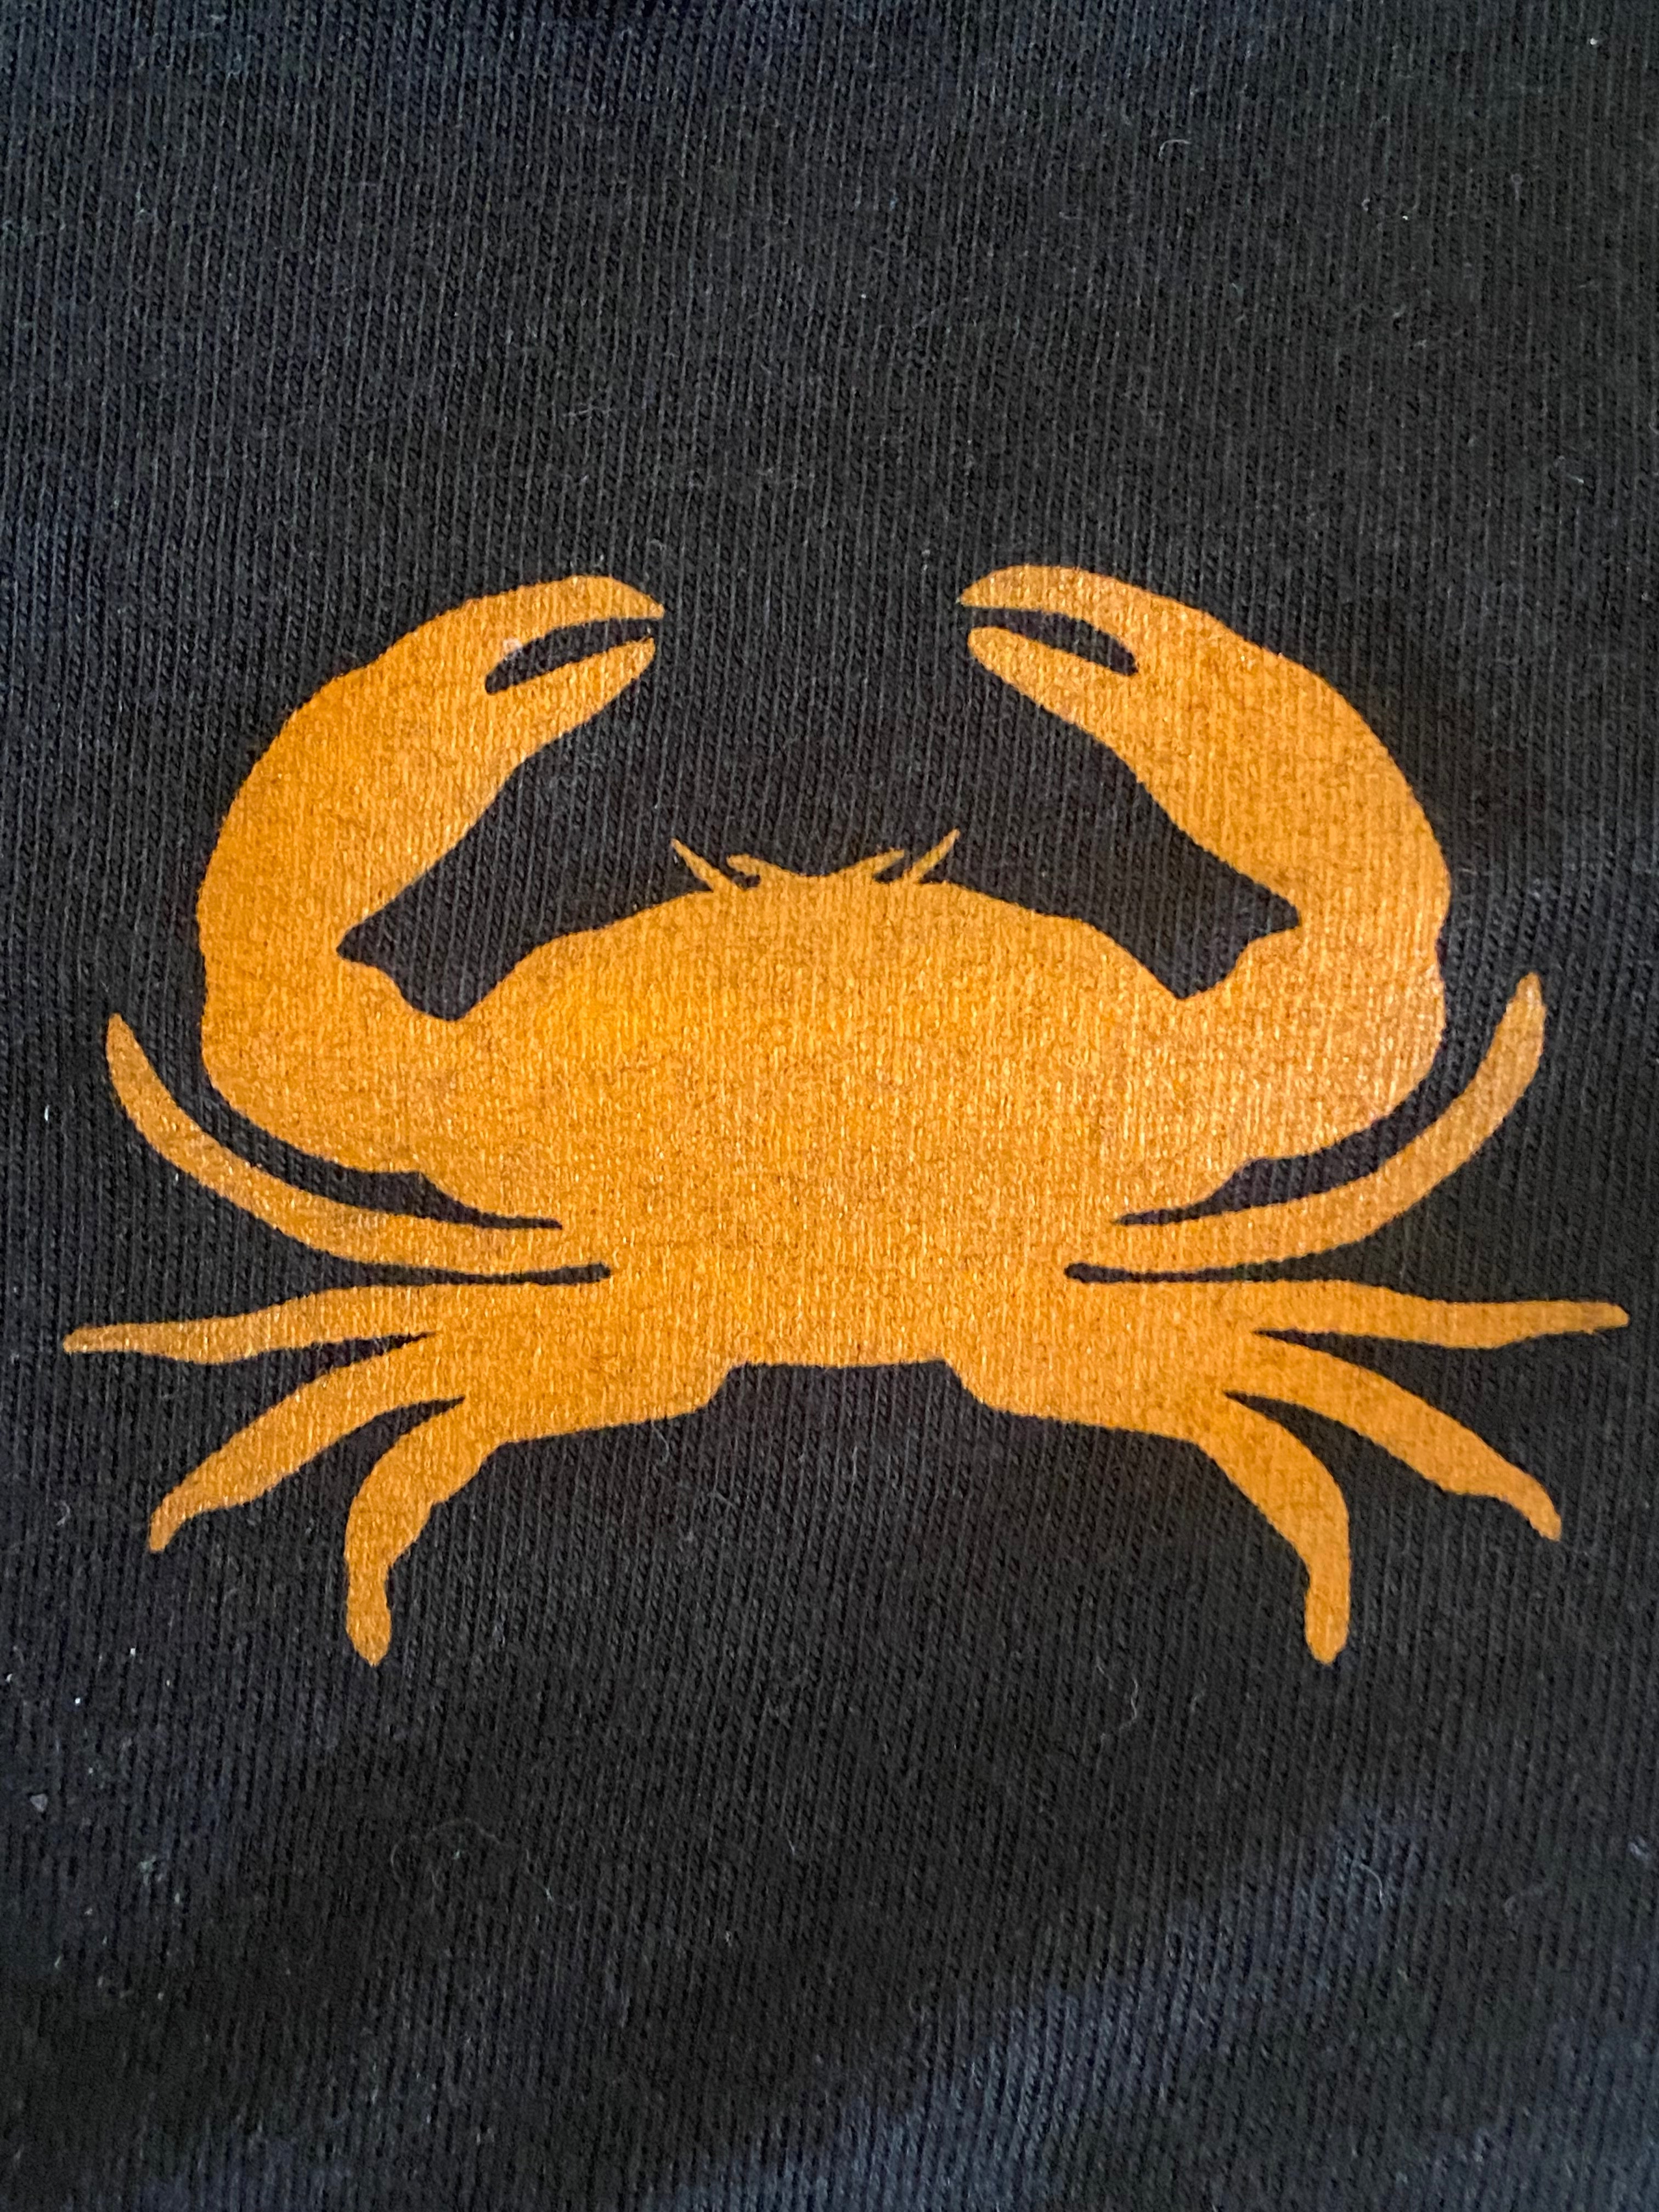 T Shirt w/Crab Logo